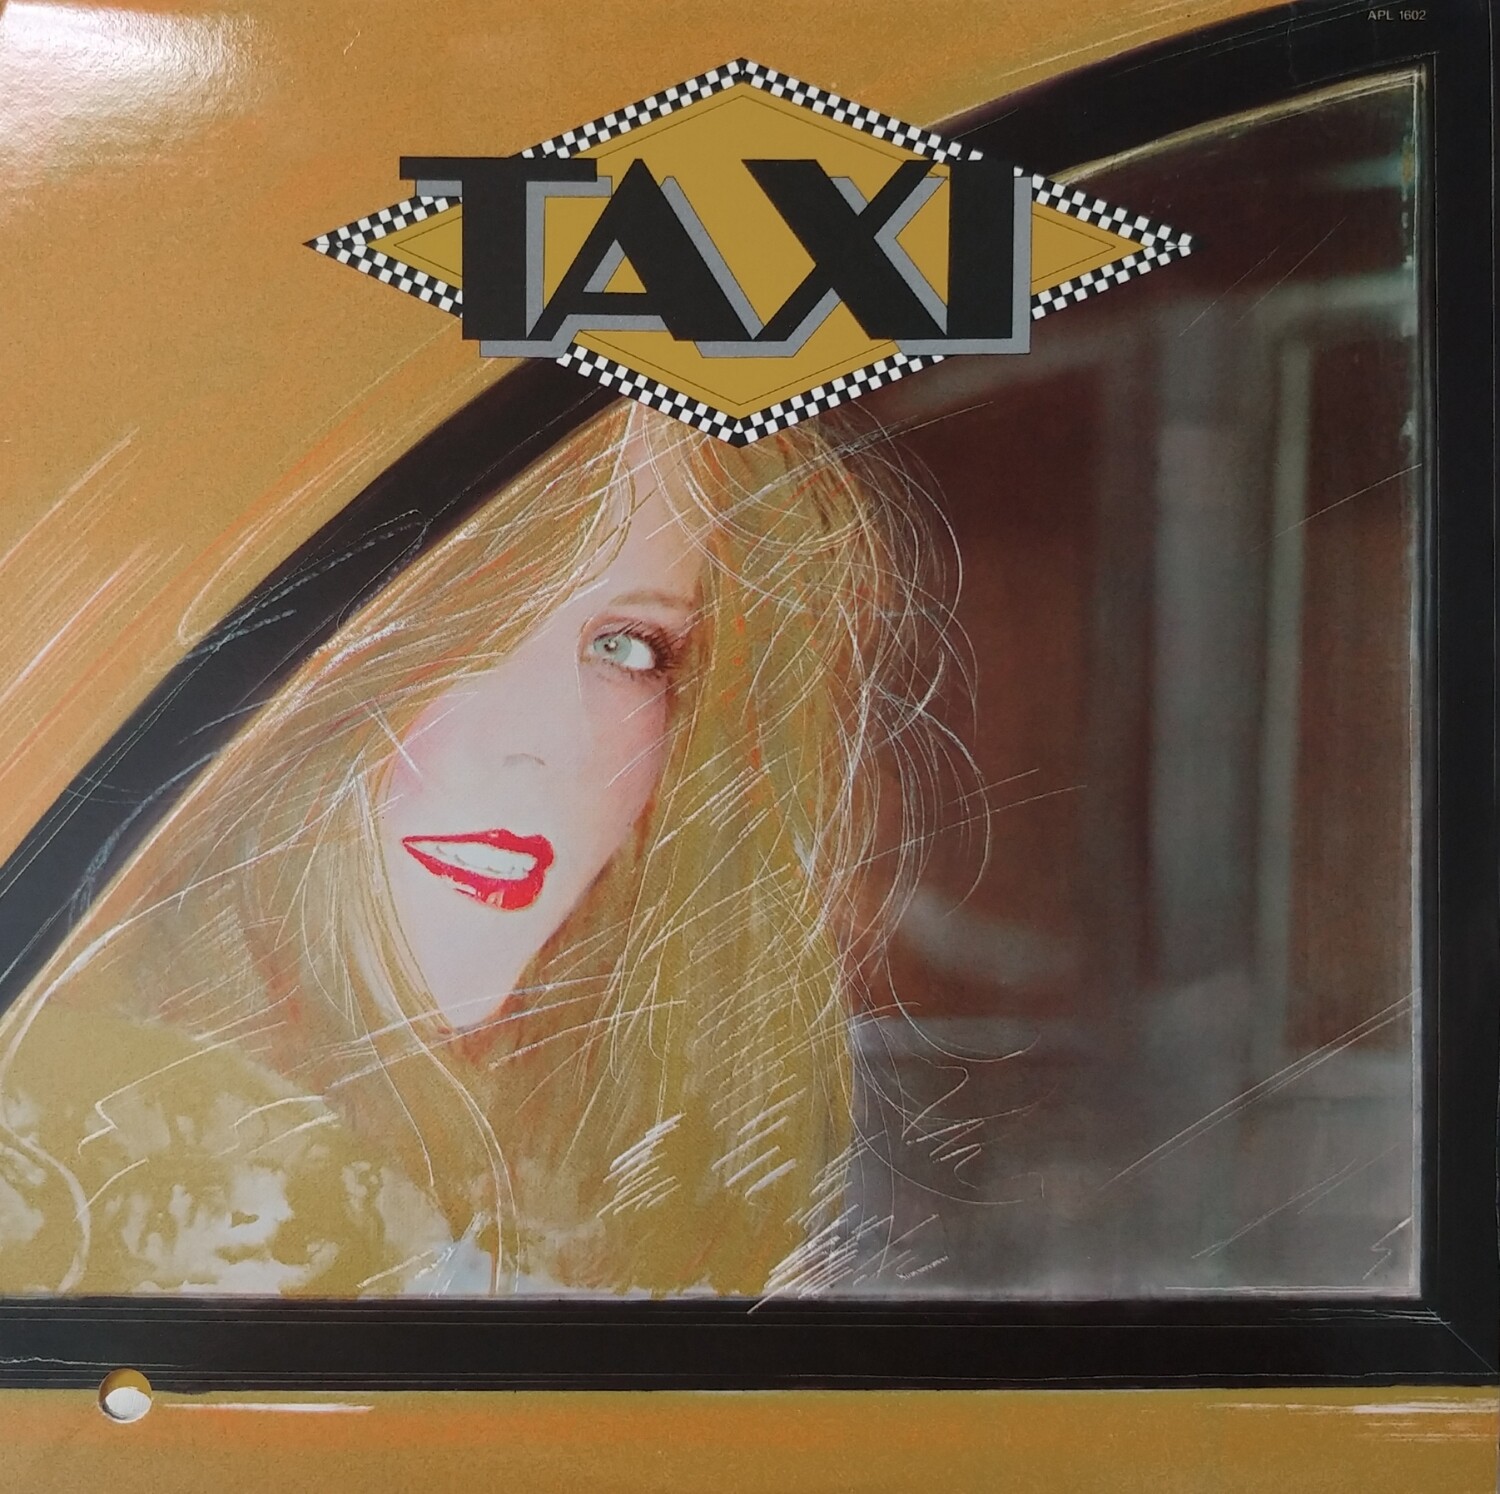 Taxi - Taxi